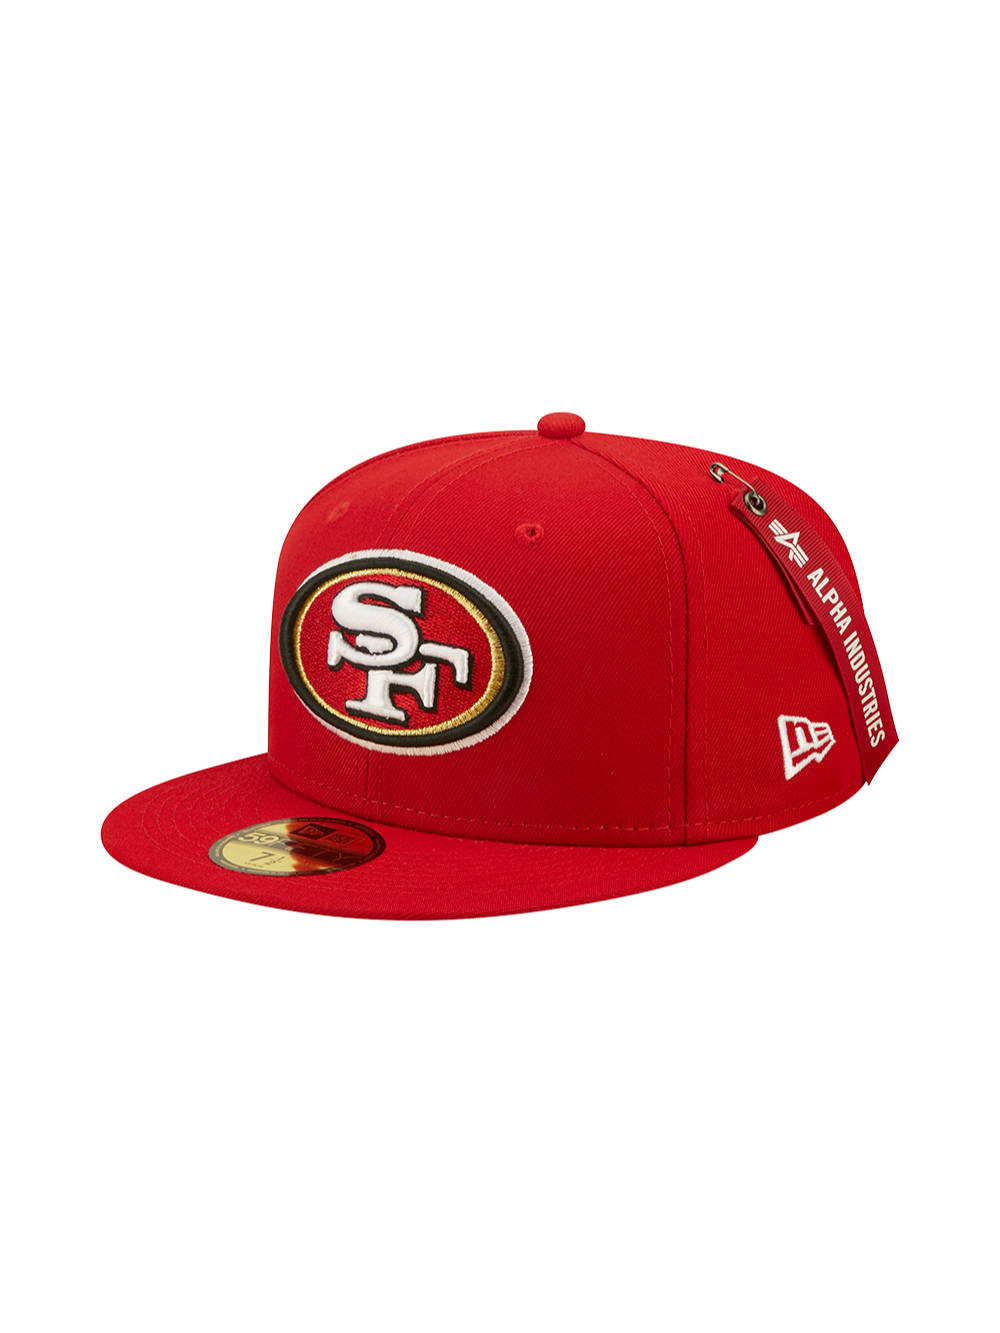 buy 49ers hat